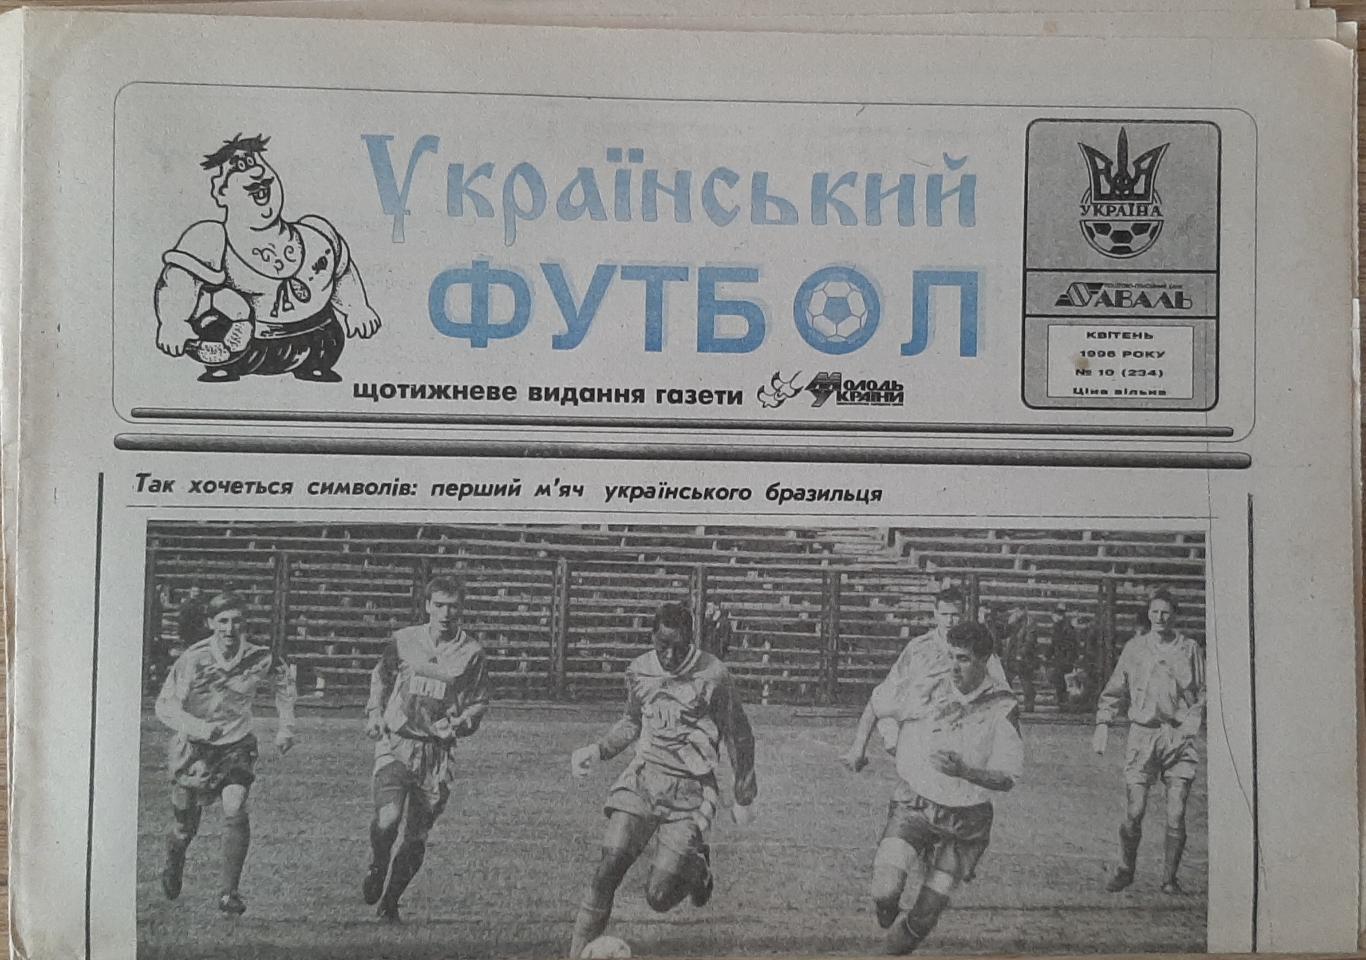 Український футбол #10 (квітень 1996)